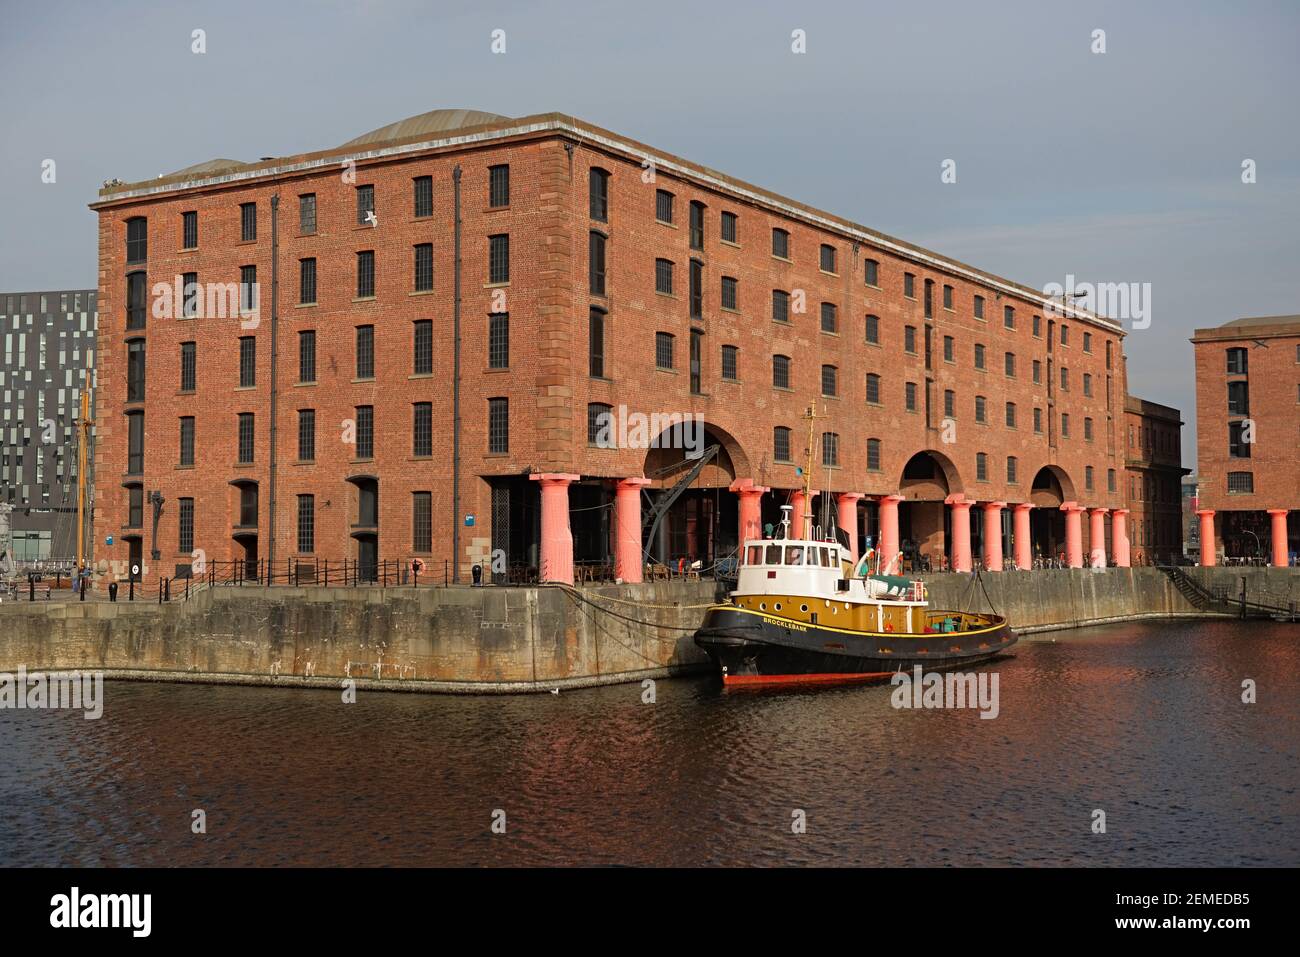 Liverpool, Royaume-Uni, 2 février 2020 : le vieux bateau brocklebank amarré à l'extérieur des bâtiments du quai royal albert, le jour du printemps, eau calme. Banque D'Images